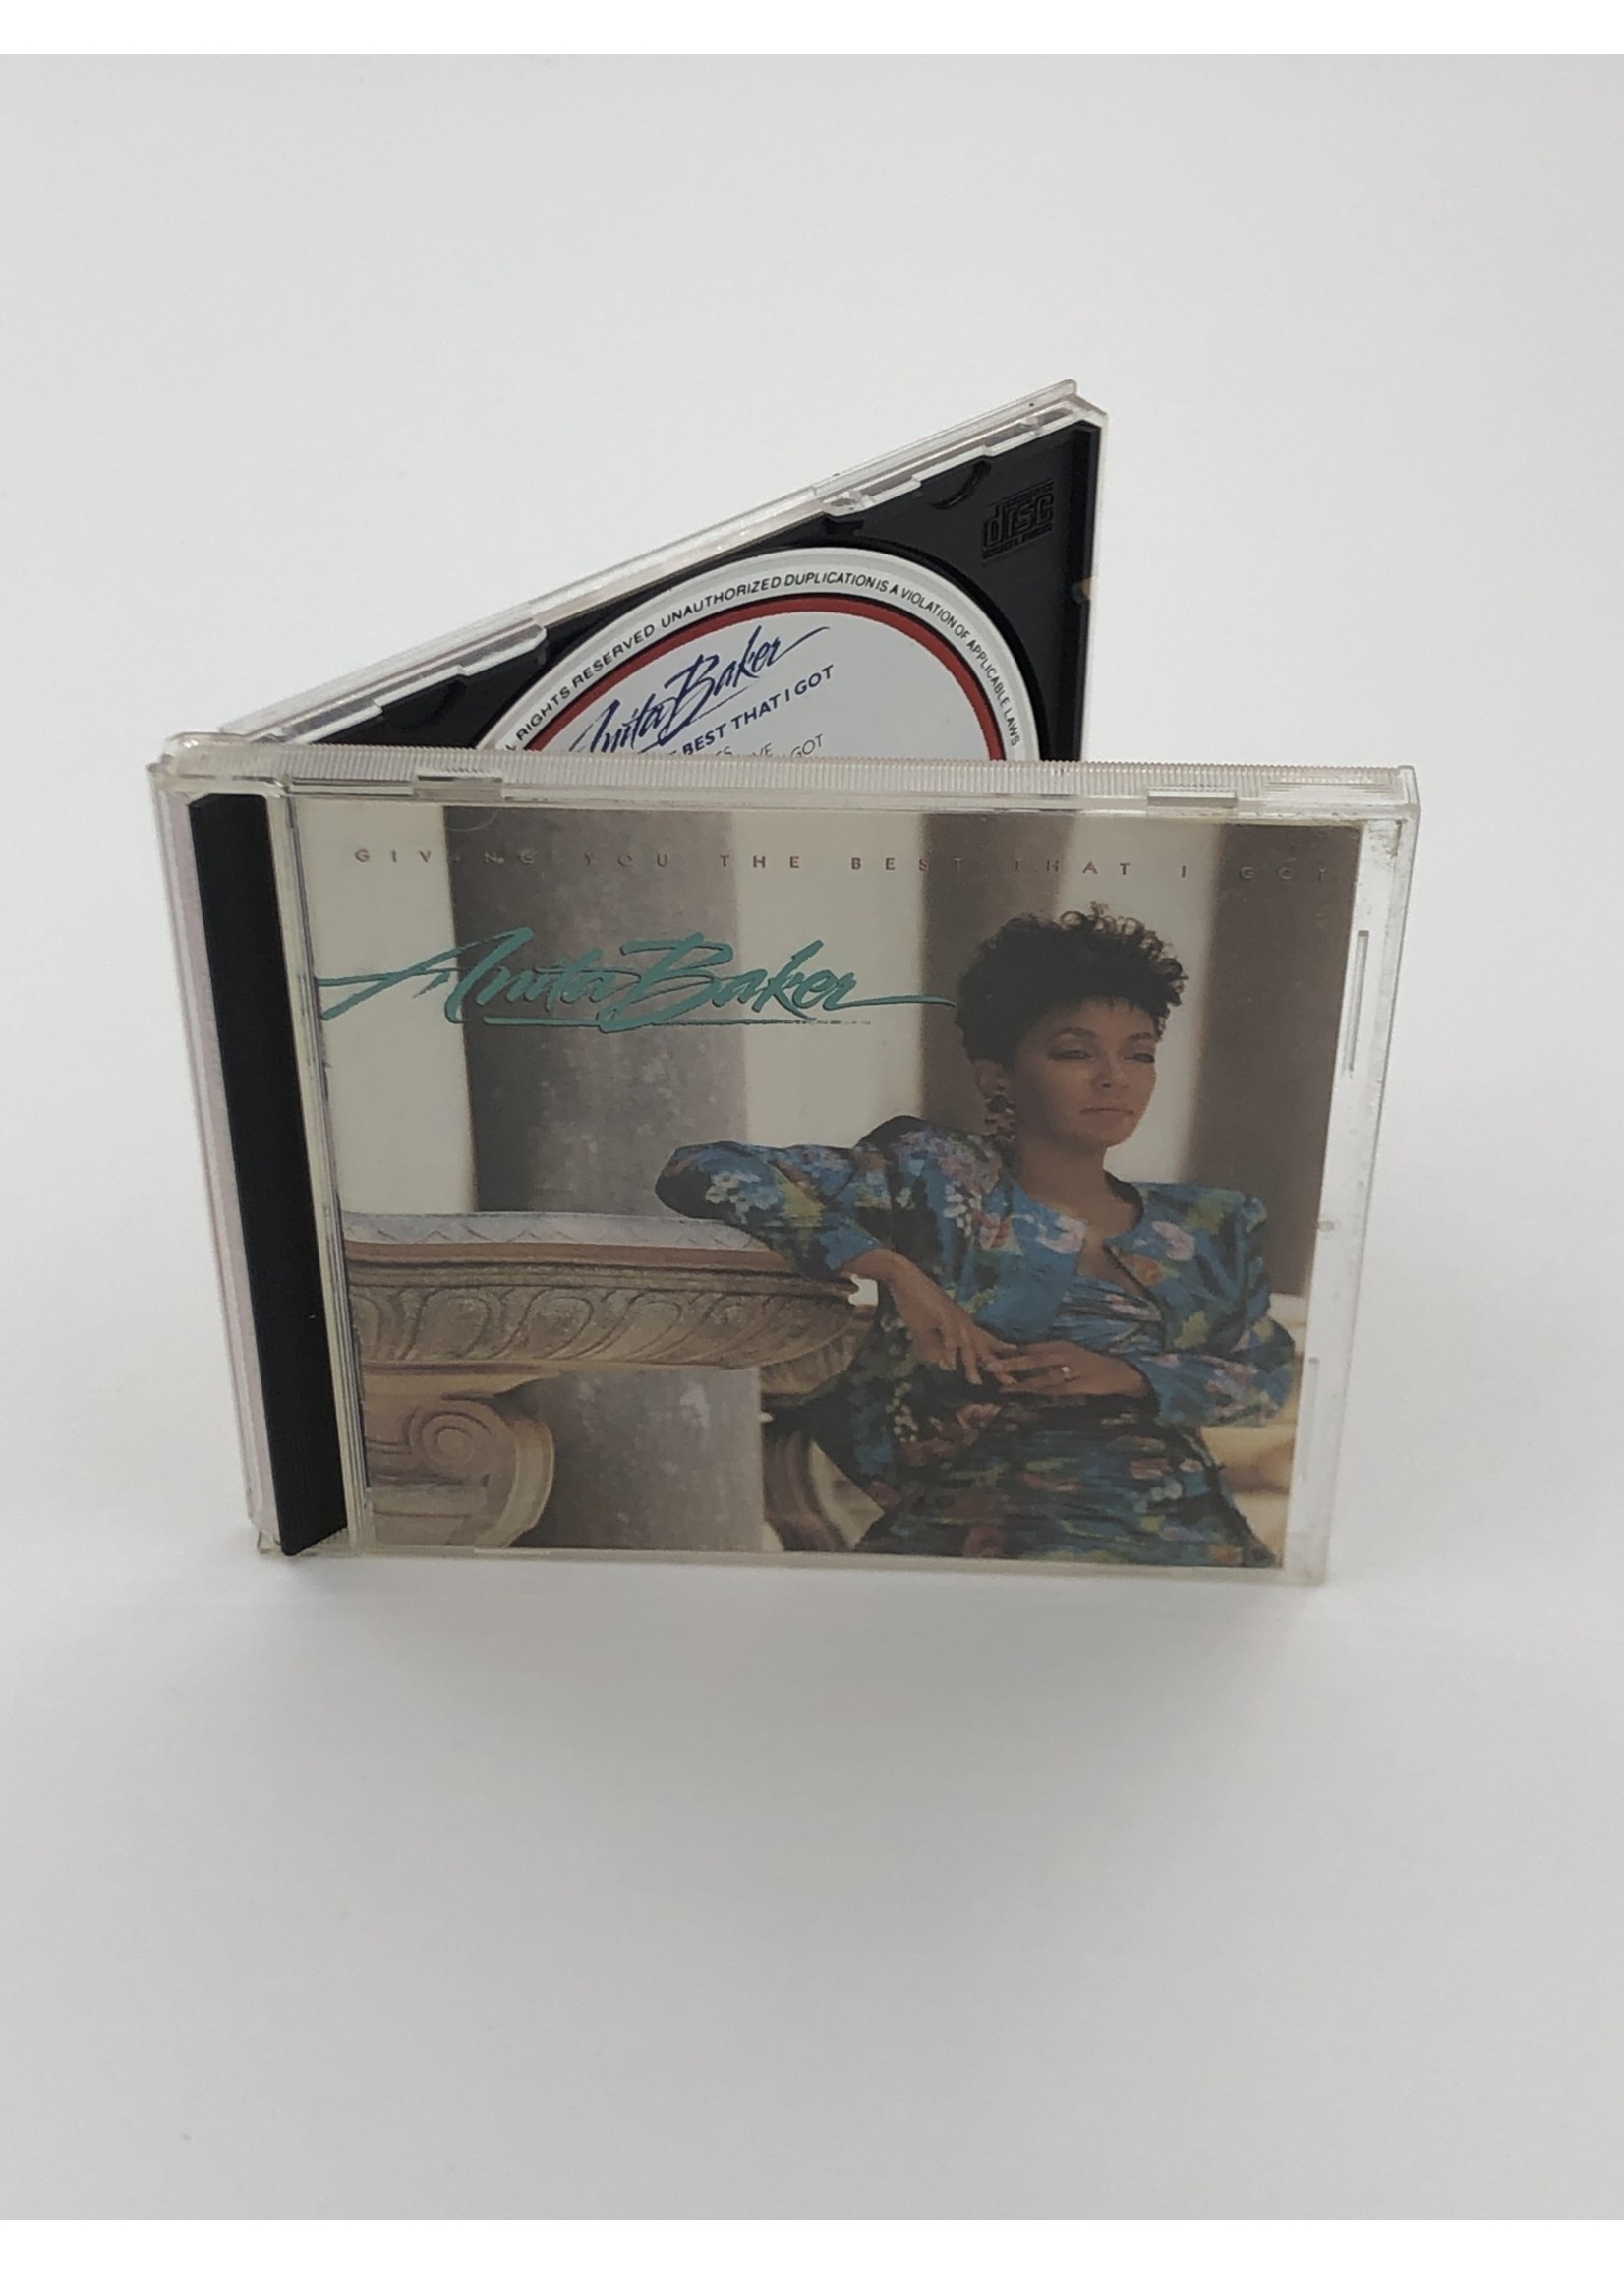 CD Anita Baker: Giving you the Best that I Got CD